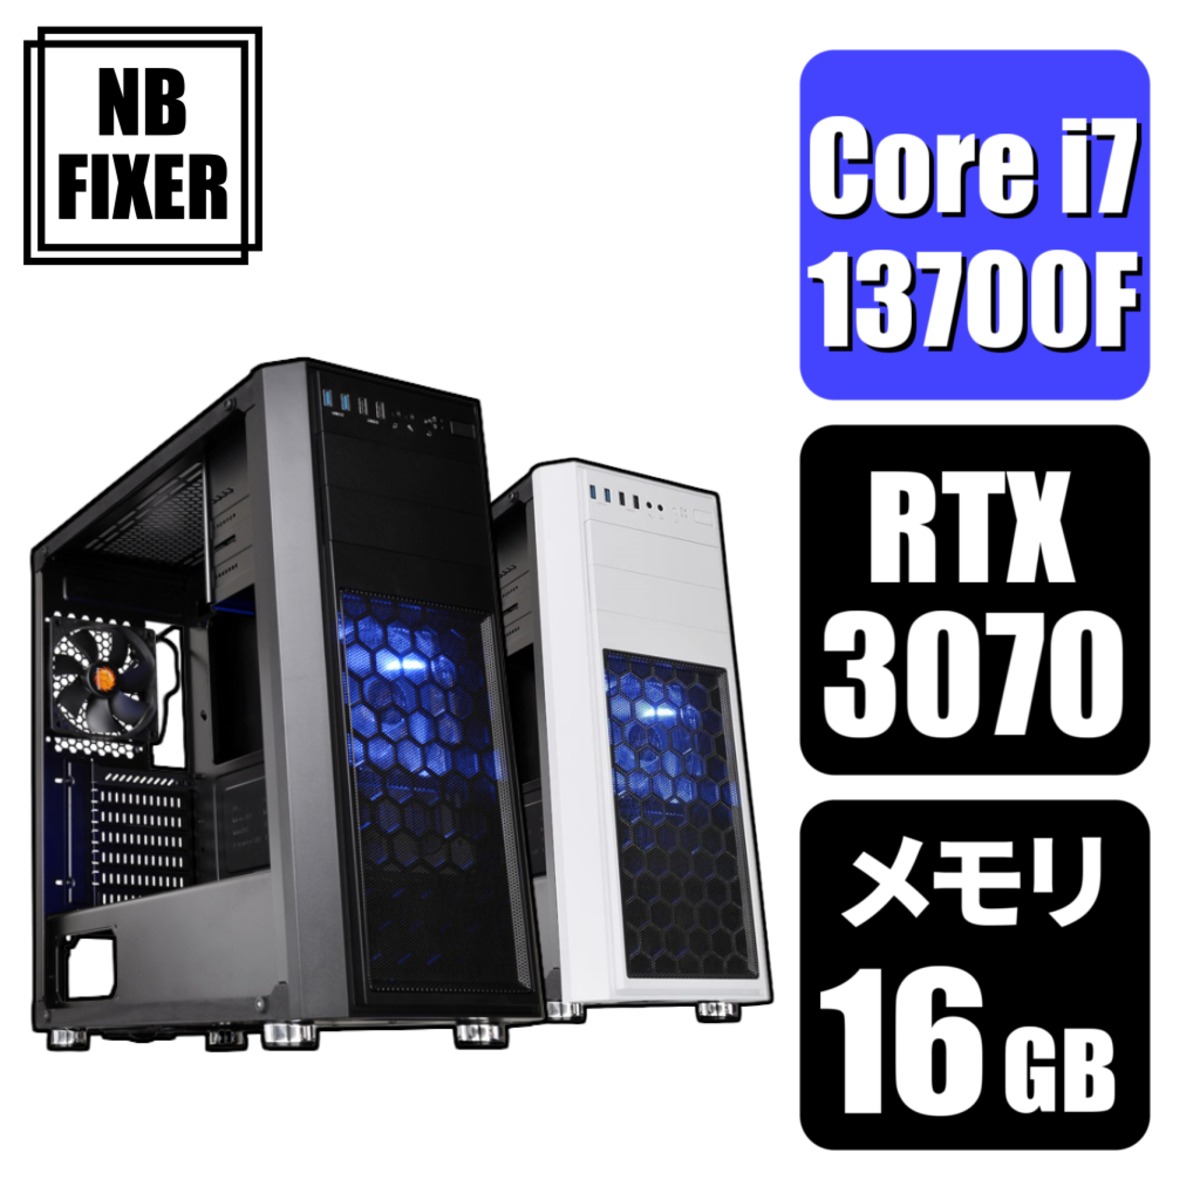 【ゲーミングPC】 Core i7 13700F / RTX3070 / メモリ16GB / SSD 1TB | NB FIXER  公式オンラインショップ powered by BASE